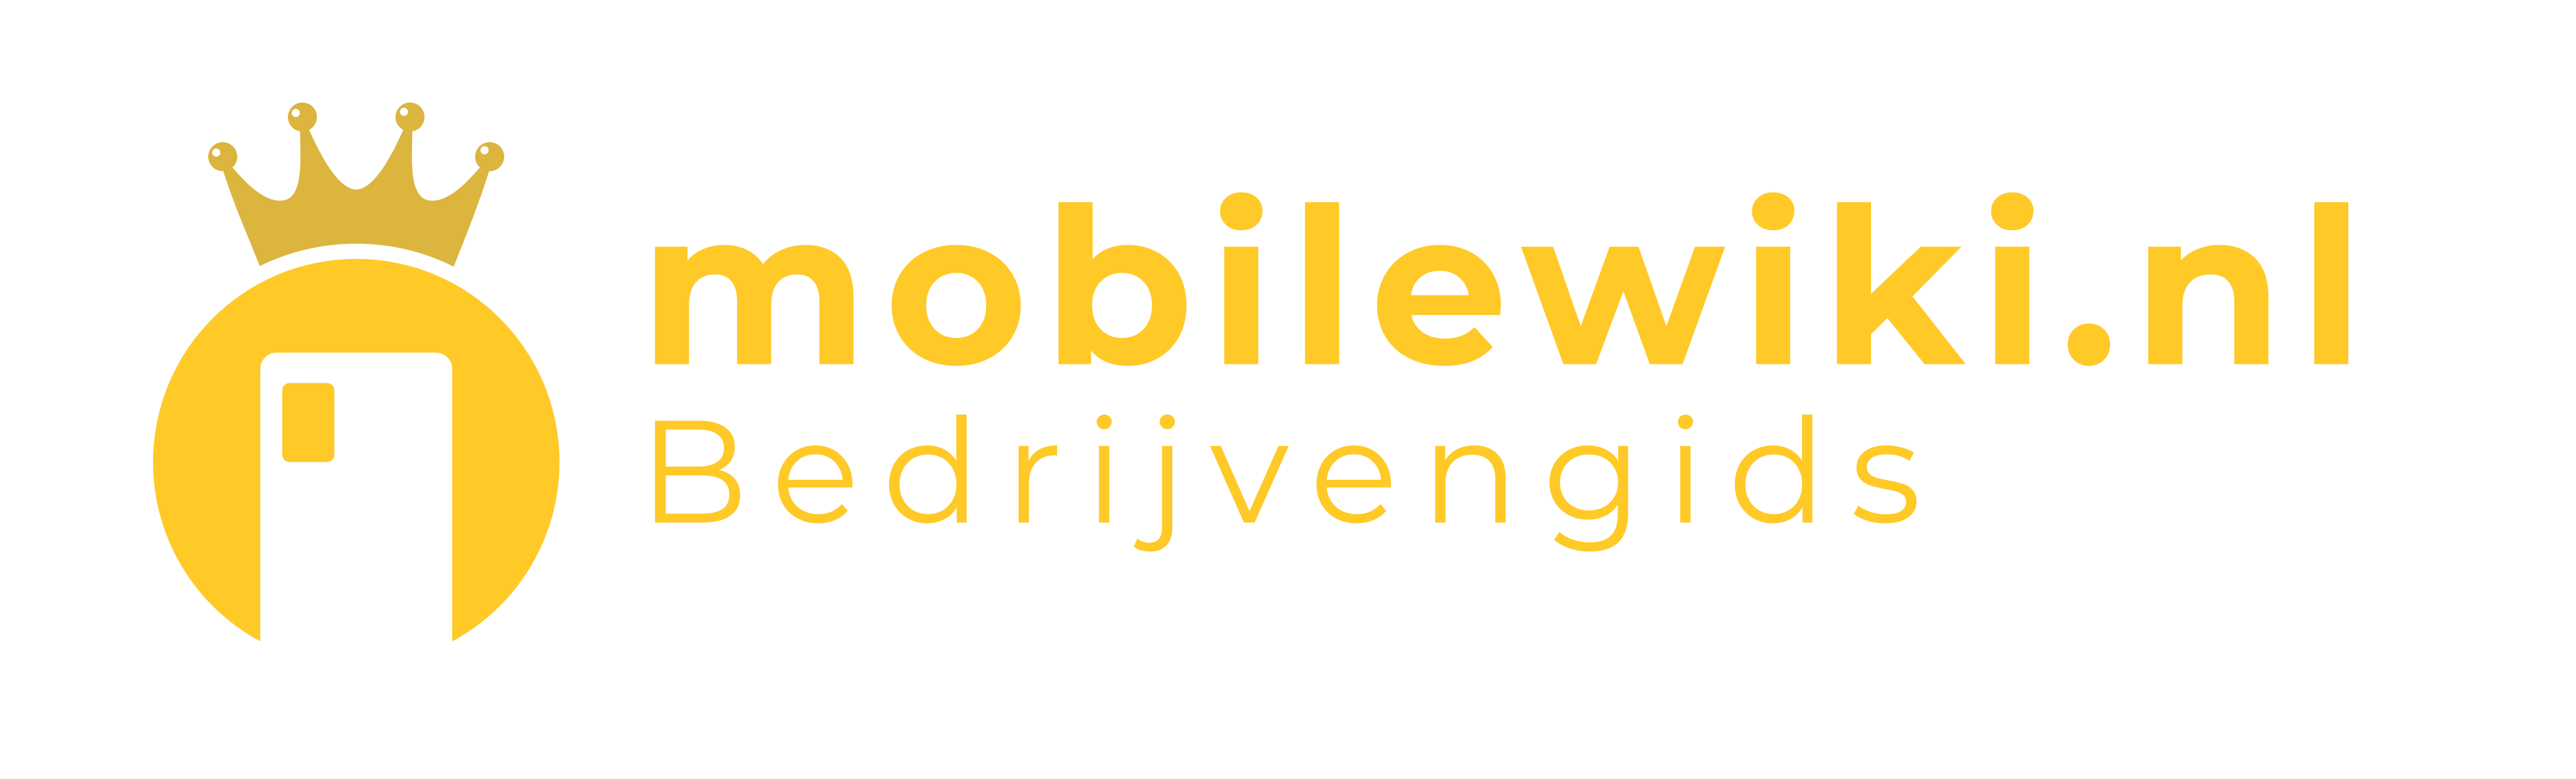 mobilewiki.nl